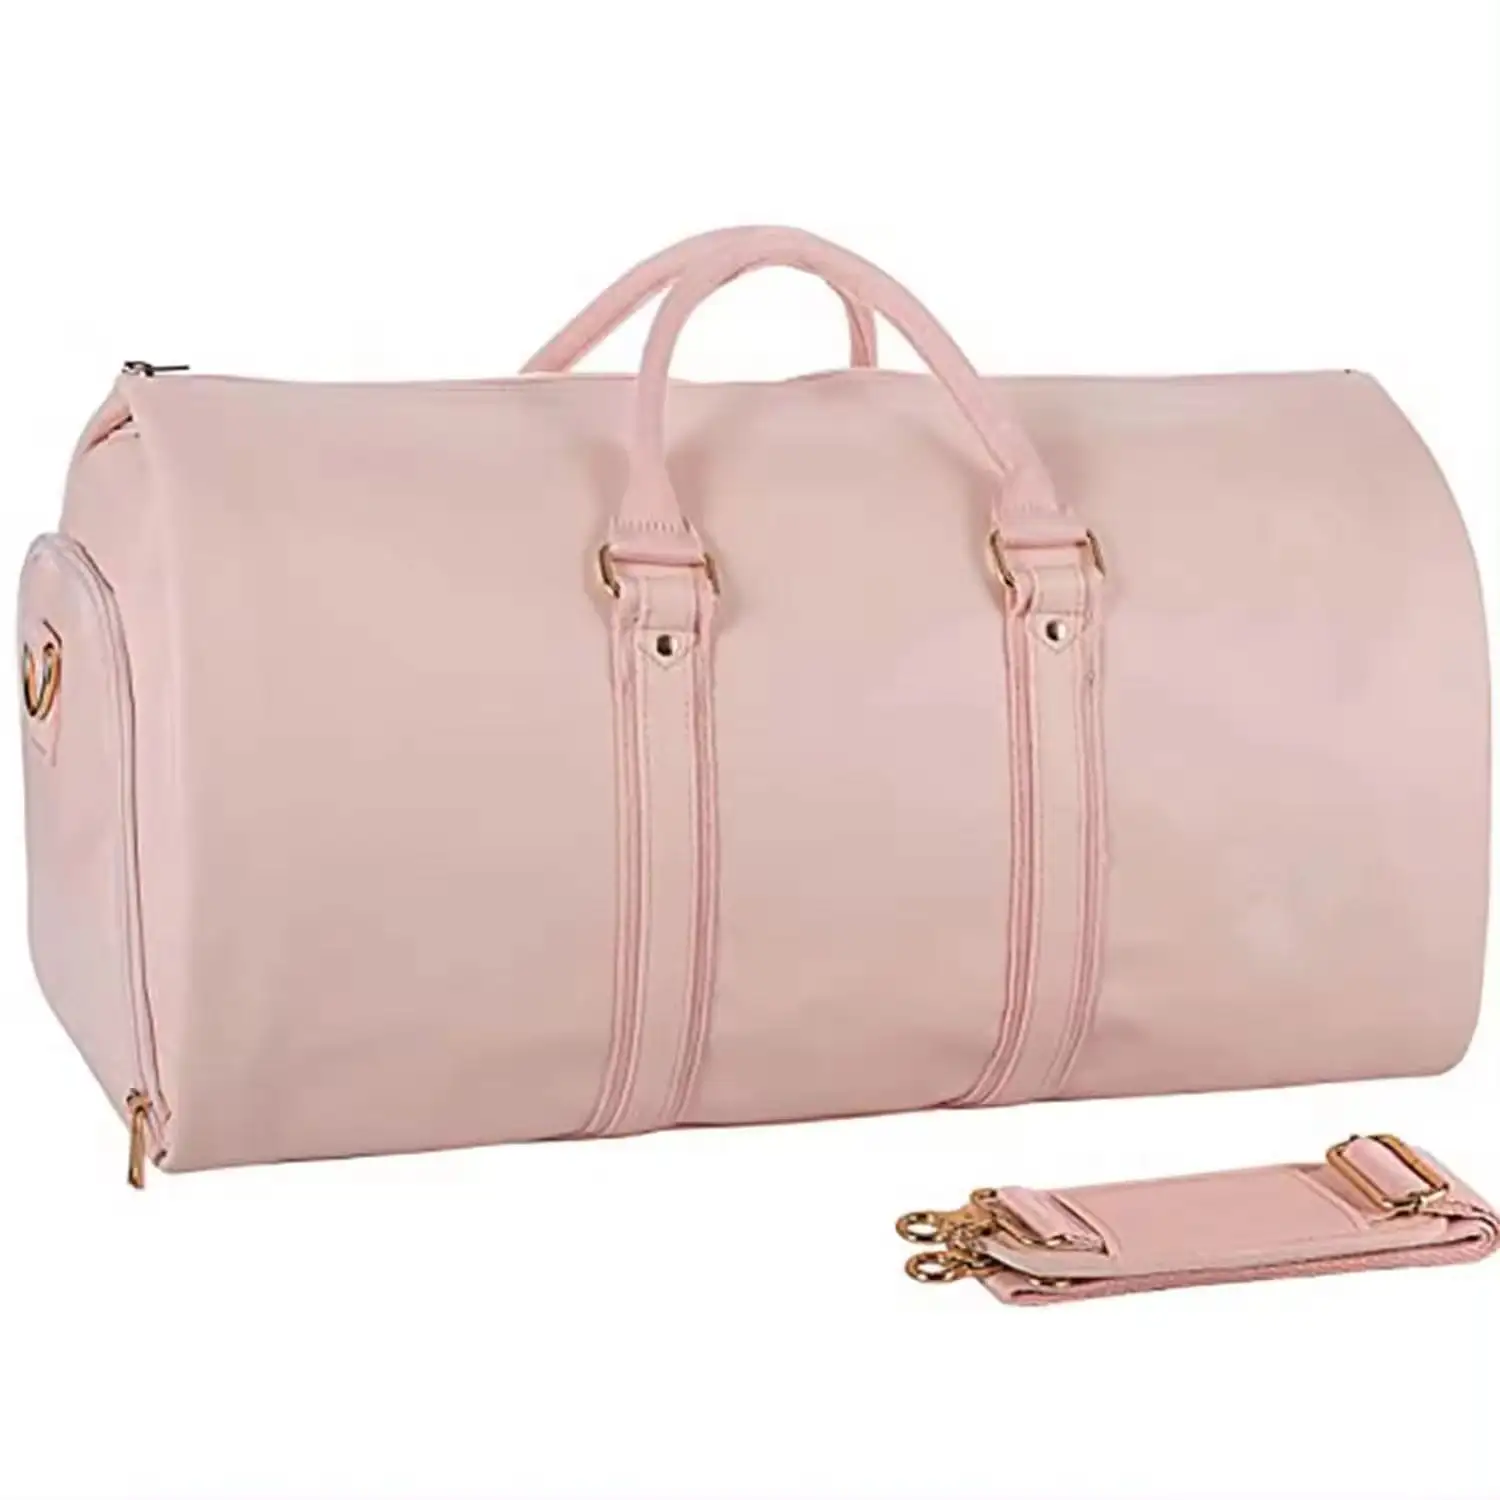 Saco de vestuário conversível personalizado para mulheres Suit Bag Leather Travel Duffel Bas Women Carry on Garment Bags Pink